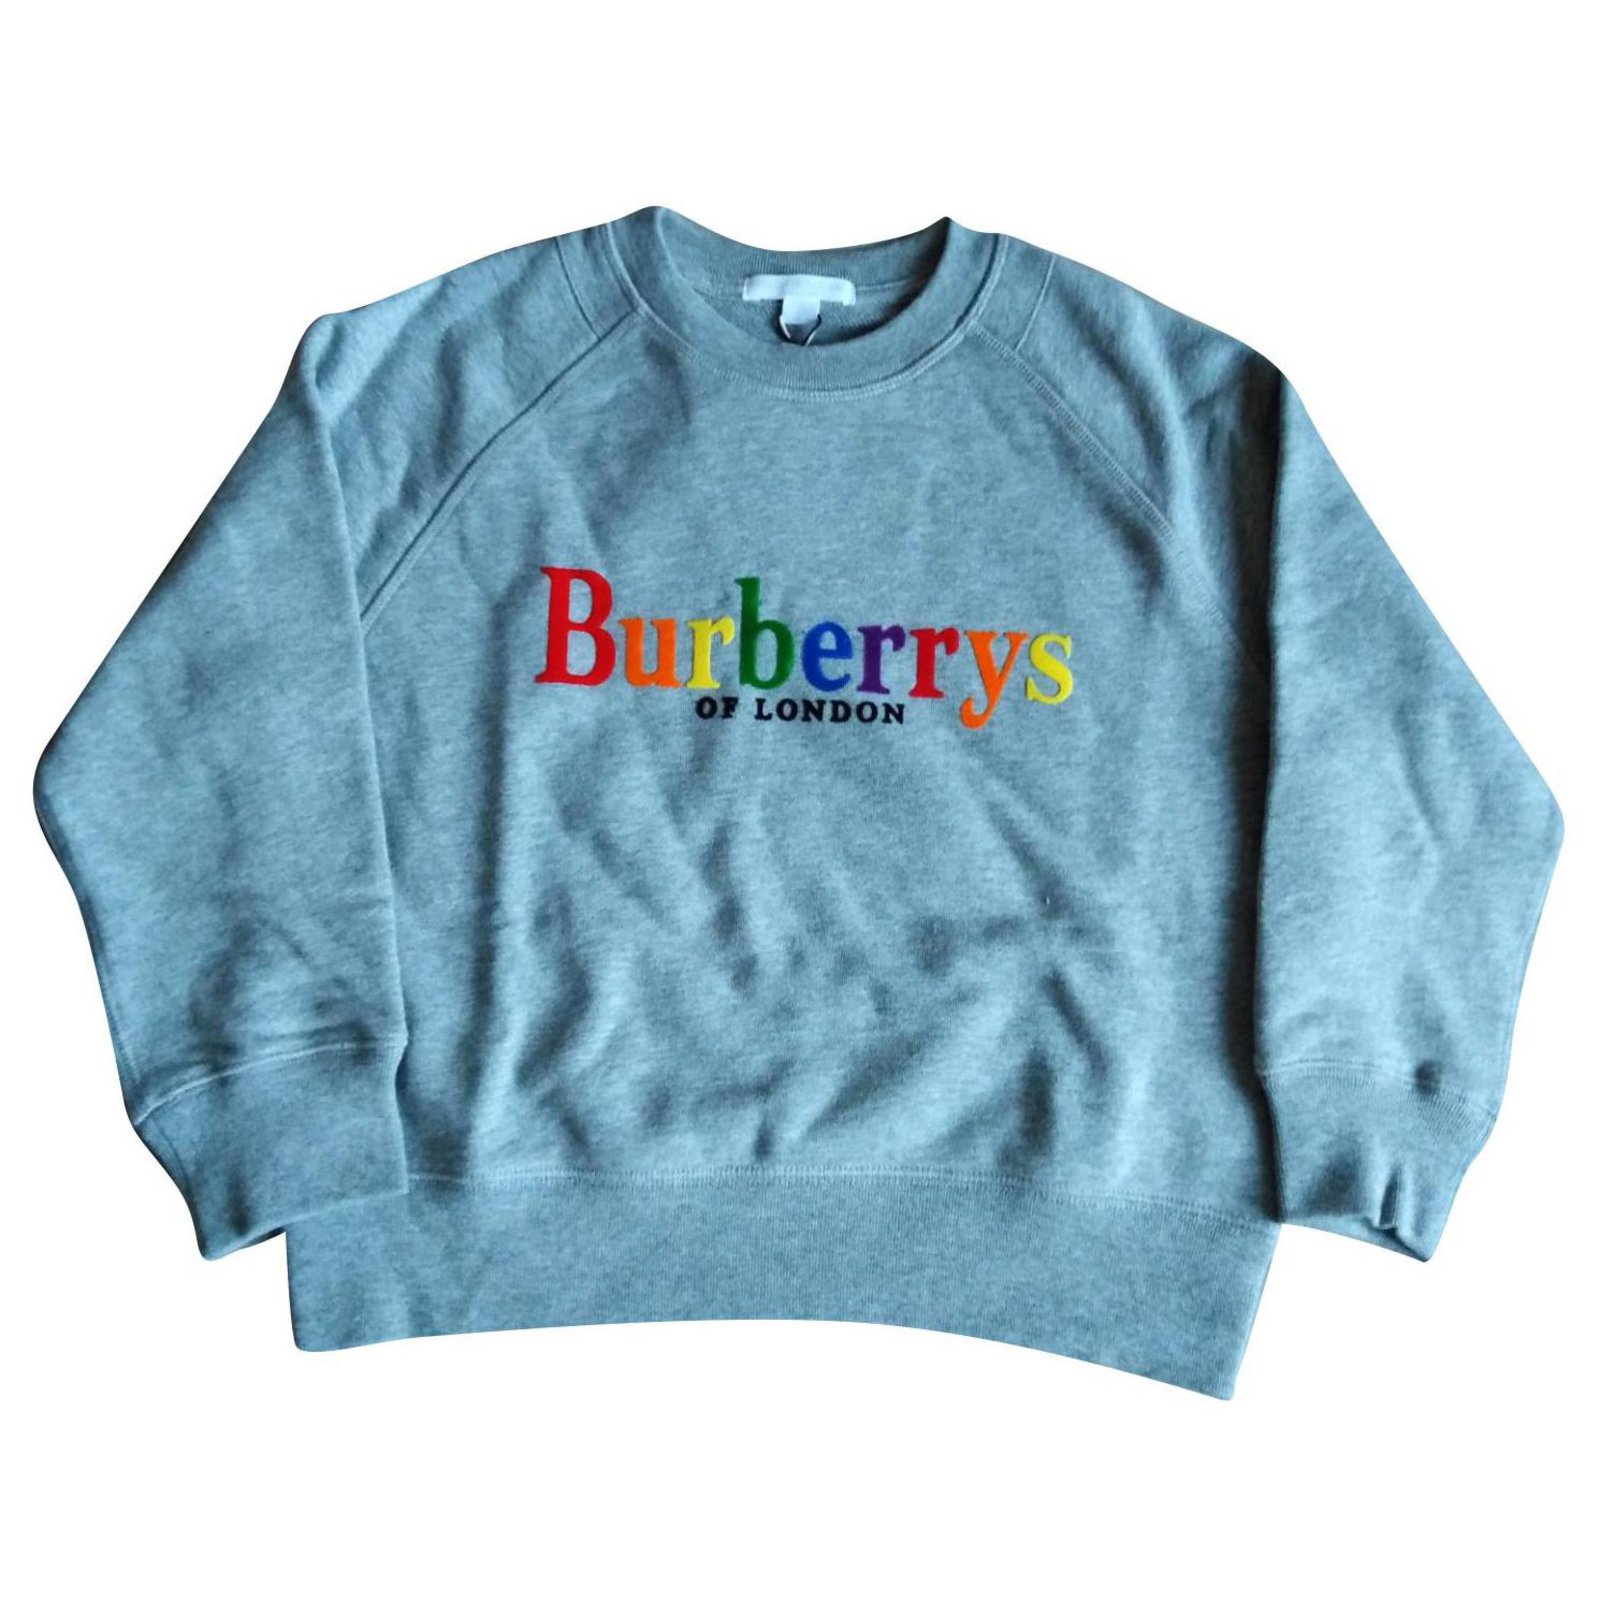 burberry sweater,www.starfab-group.com